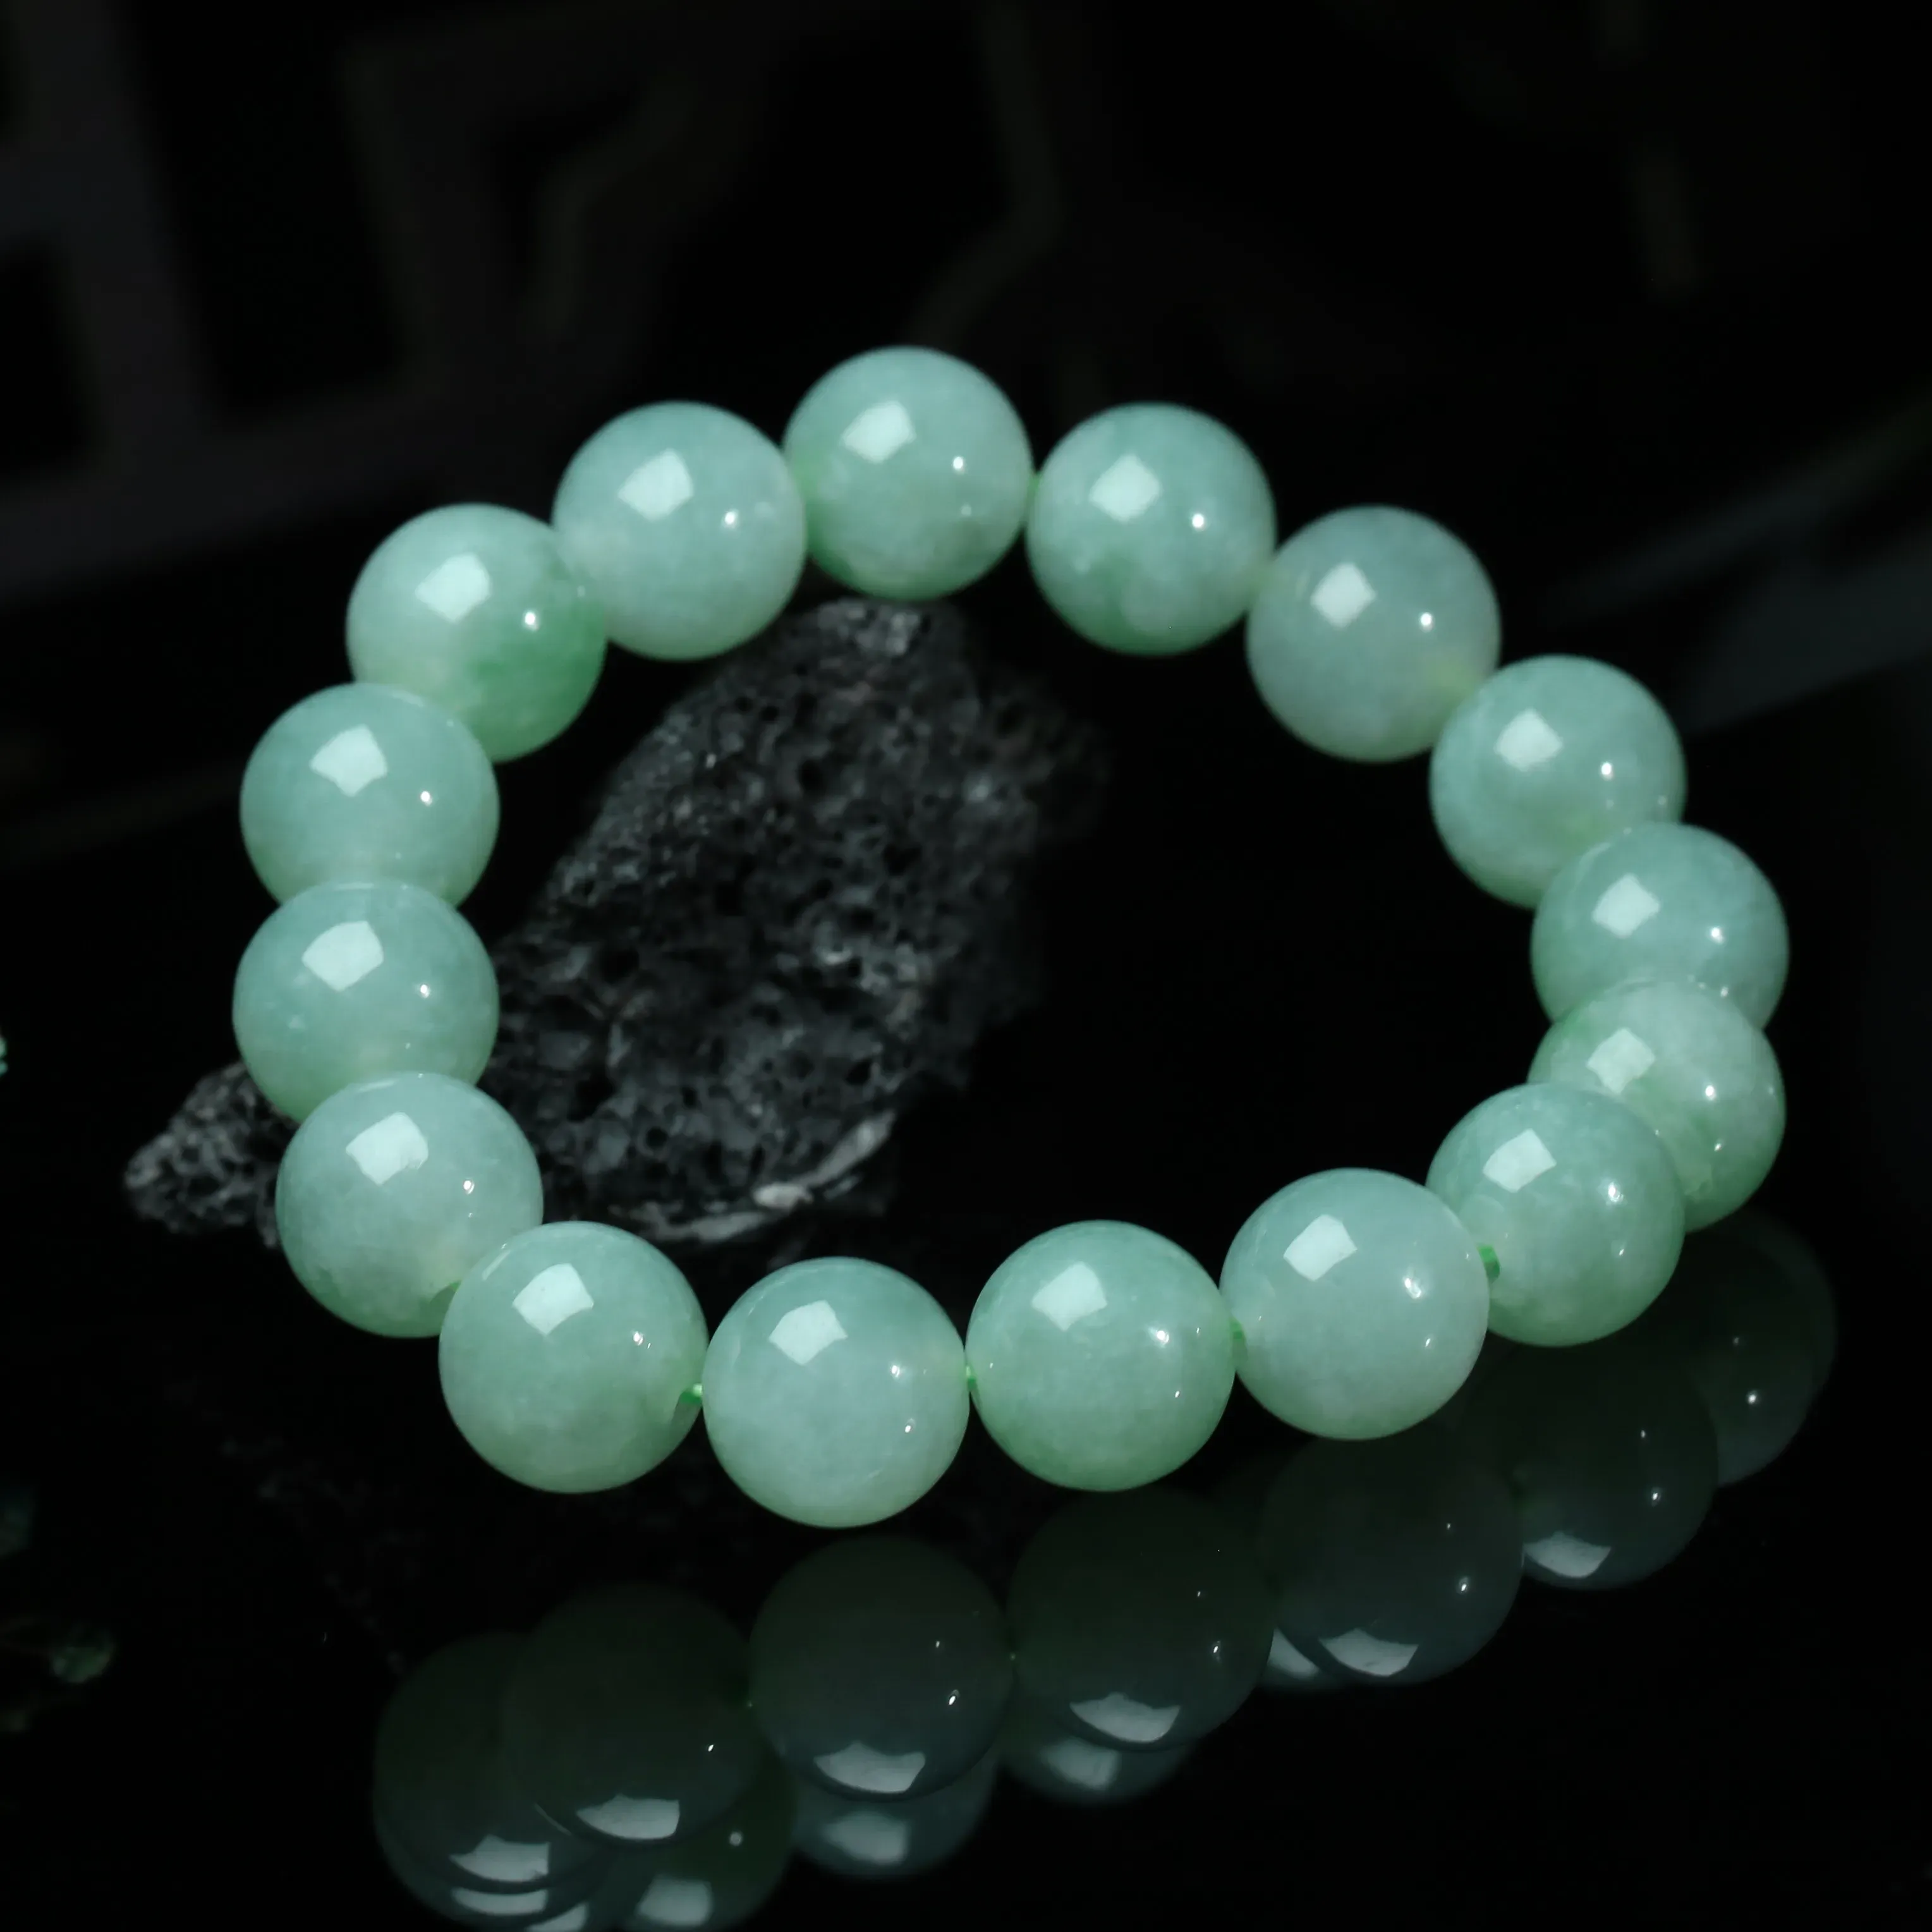 推荐款浅绿翡翠圆珠手串。共16颗珠子，取其中一颗珠尺寸大约13.3mm，亮丽秀气，圆润饱满。上手佩戴效果佳。